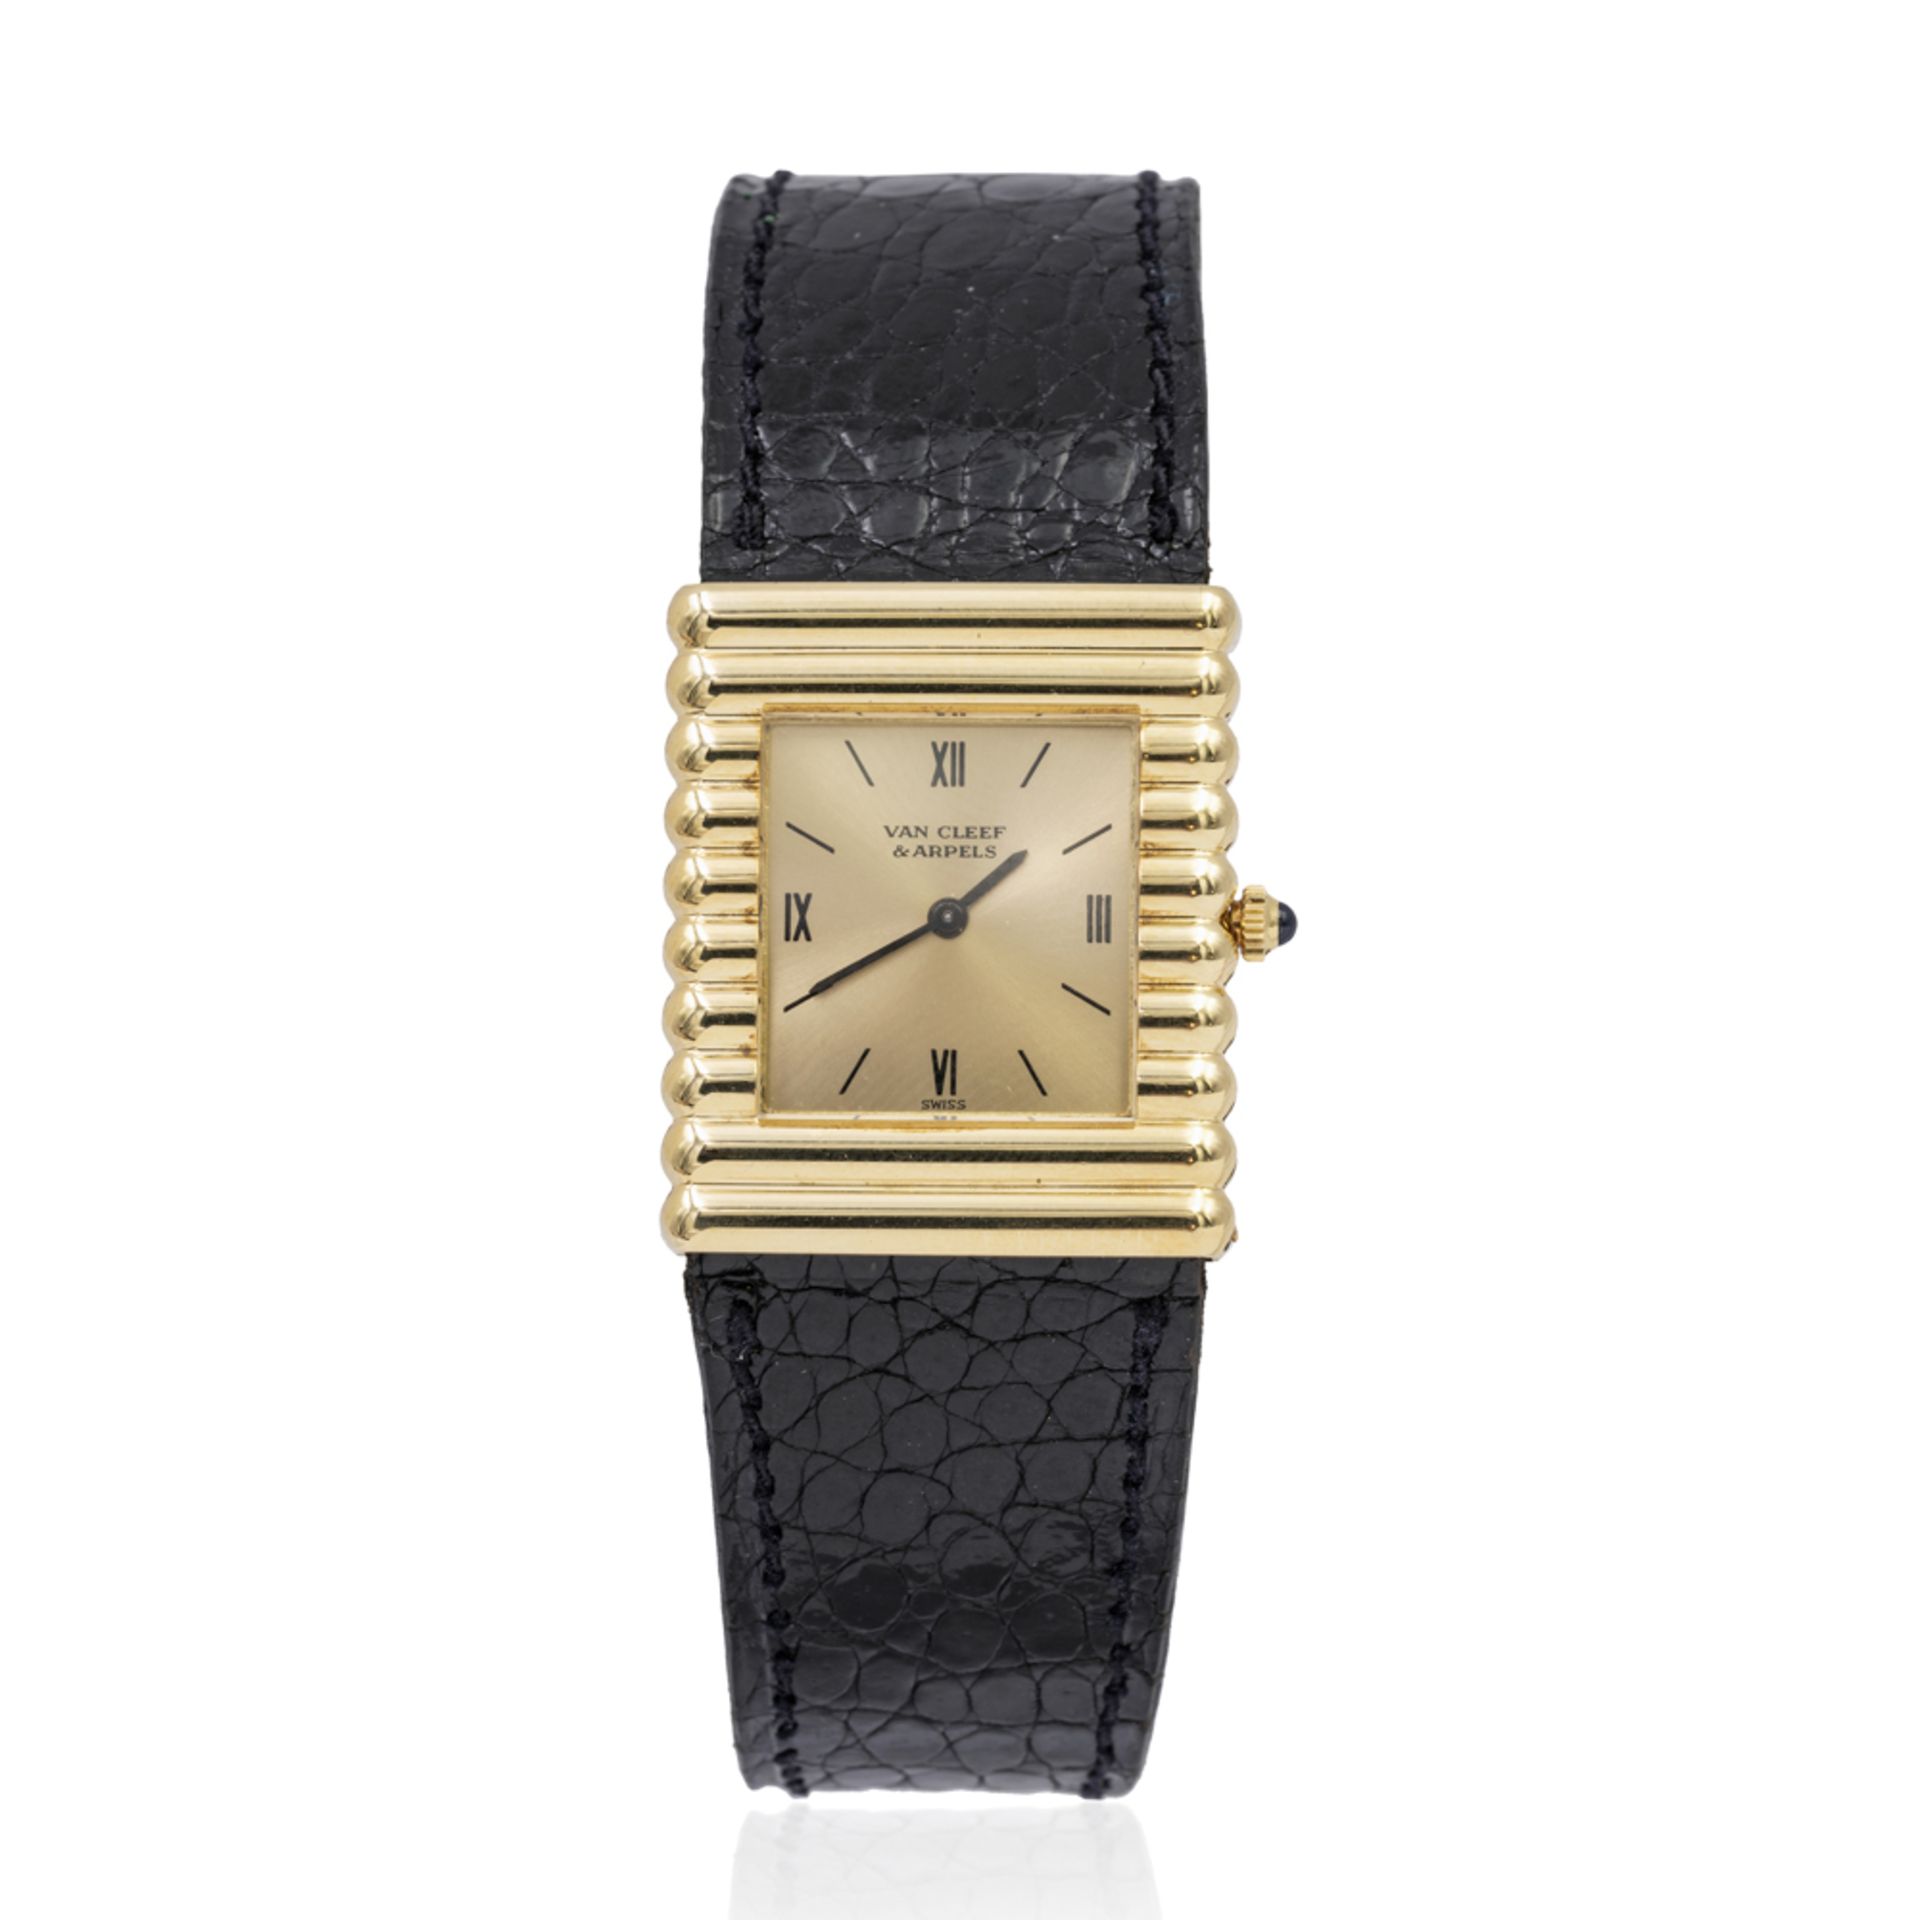 Piaget for Van Cleef & Arpels, vintage wristwatch